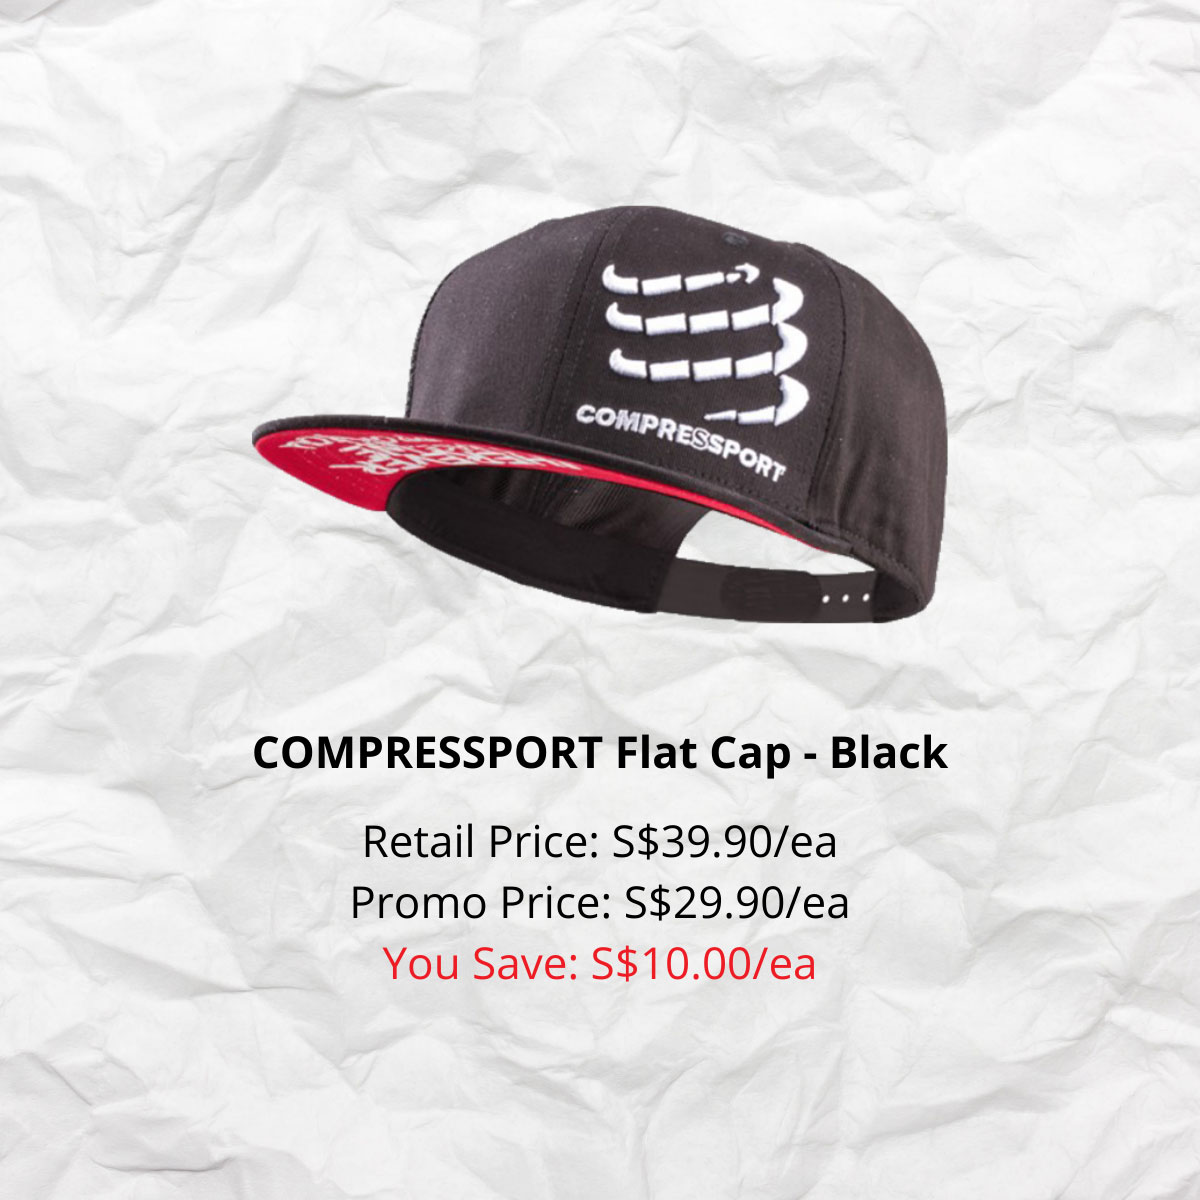 COMPRESSPORT Flat Cap - Black